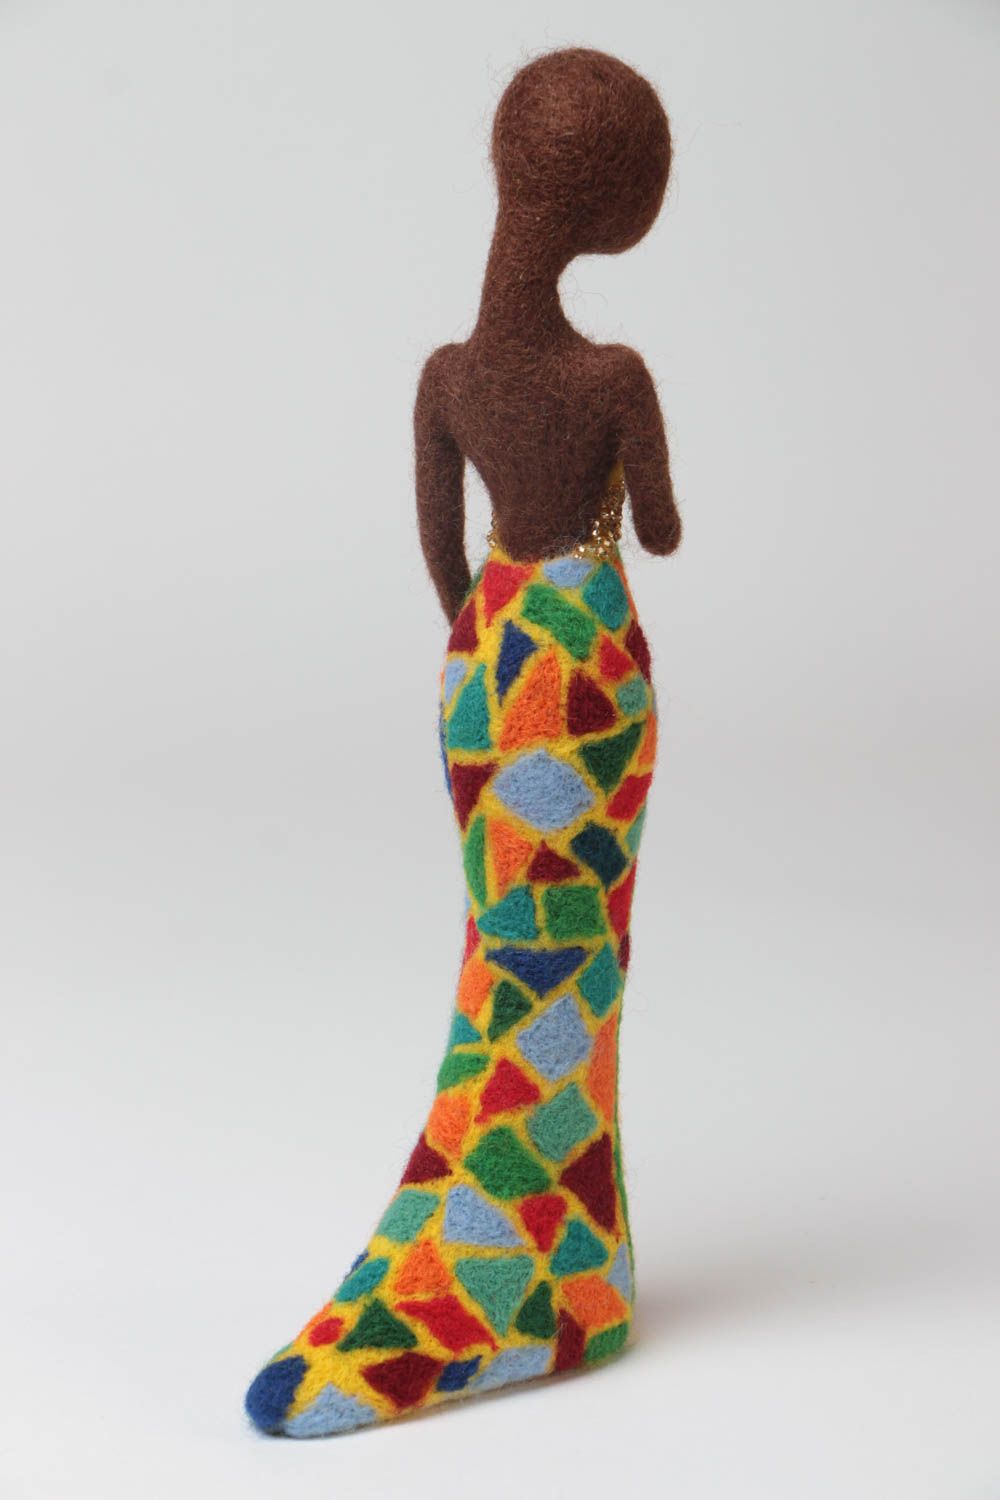 Статуэтка из шерсти в технике сухого валяния маленькая африканка ручной работы фото 4